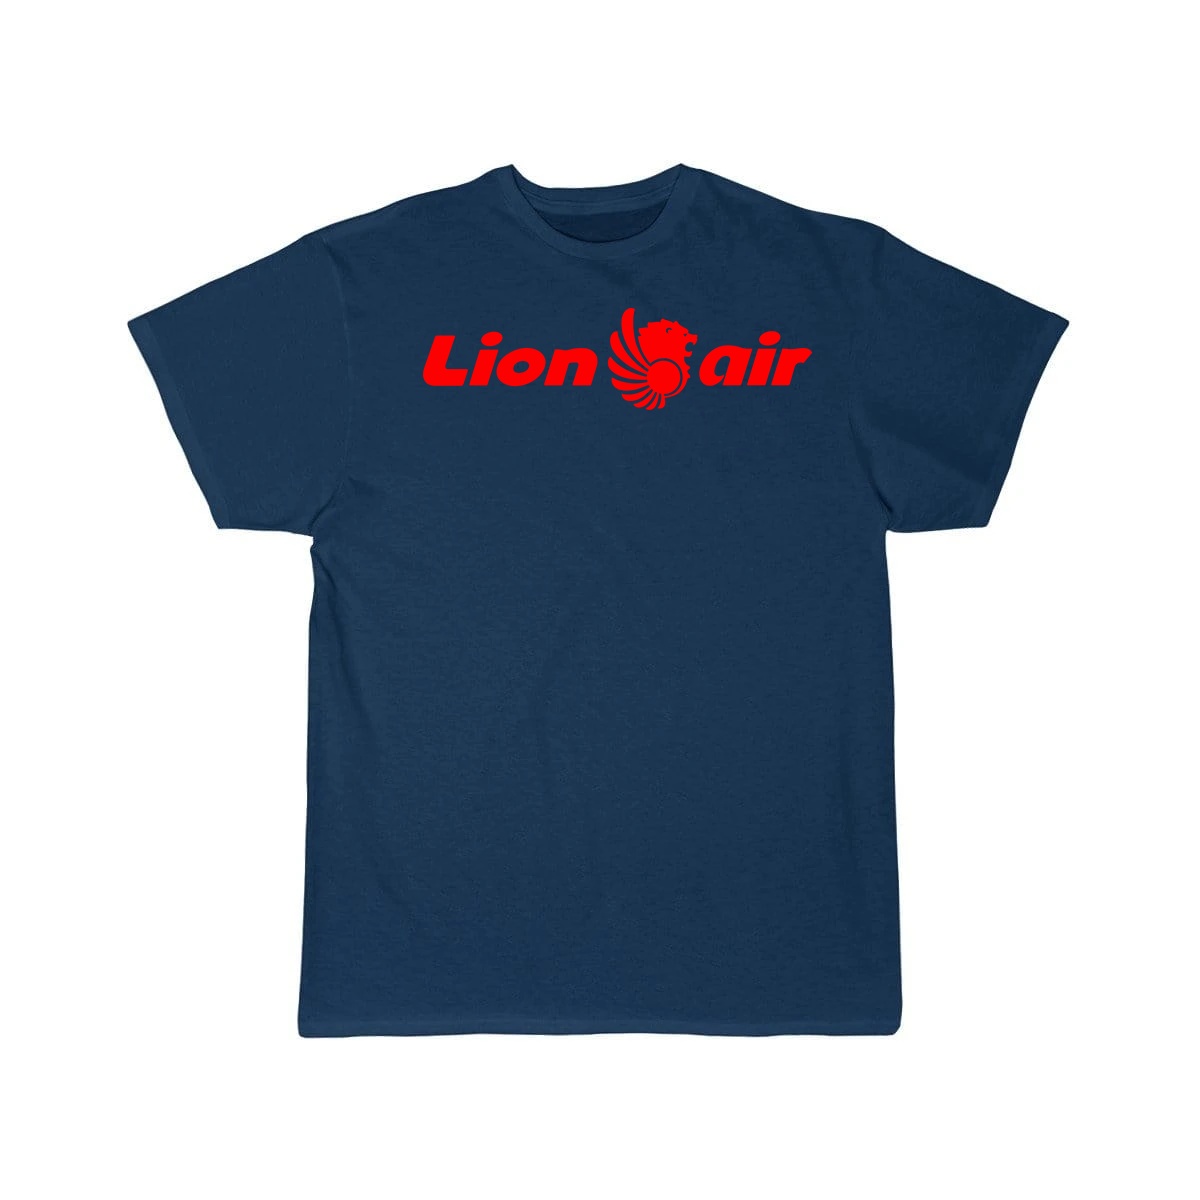 LION AIRLINE T-SHIRT